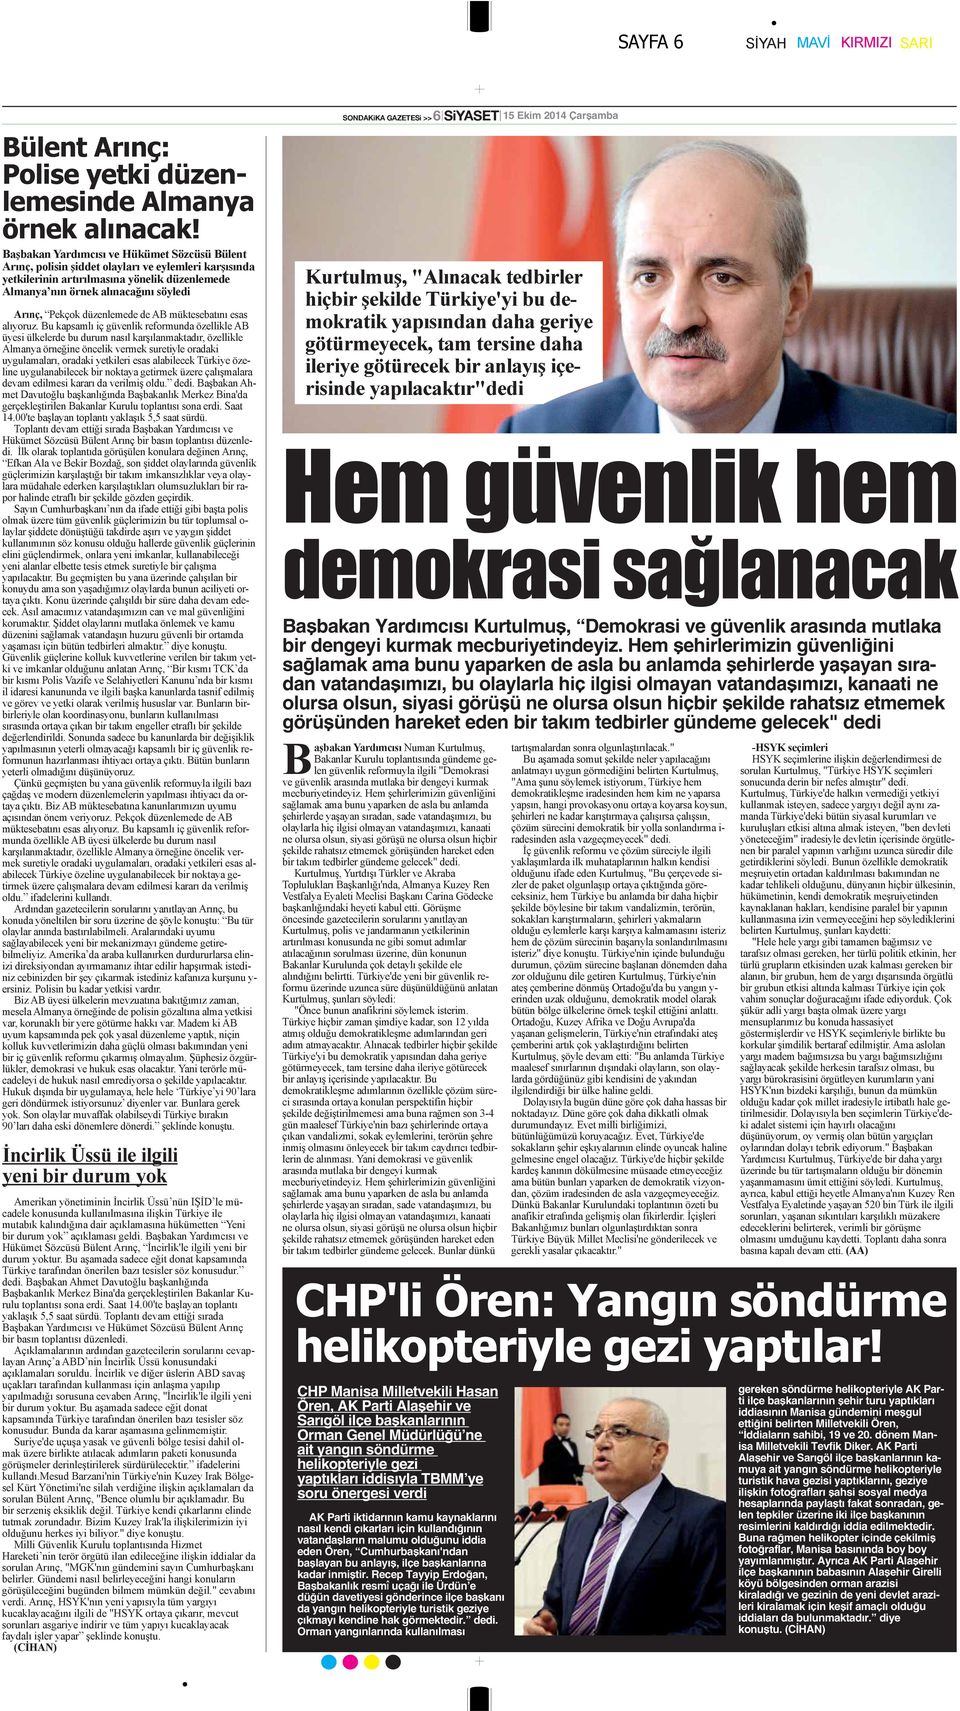 görüşü ne olursa olsun hiçbir şekilde rahatsız etmemek görüşünden hareket eden bir takım tedbirler gündeme gelecek" dedi CHP Manisa Milletvekili Hasan Ören, AK Parti Alaşehir ve Sarıgöl ilçe